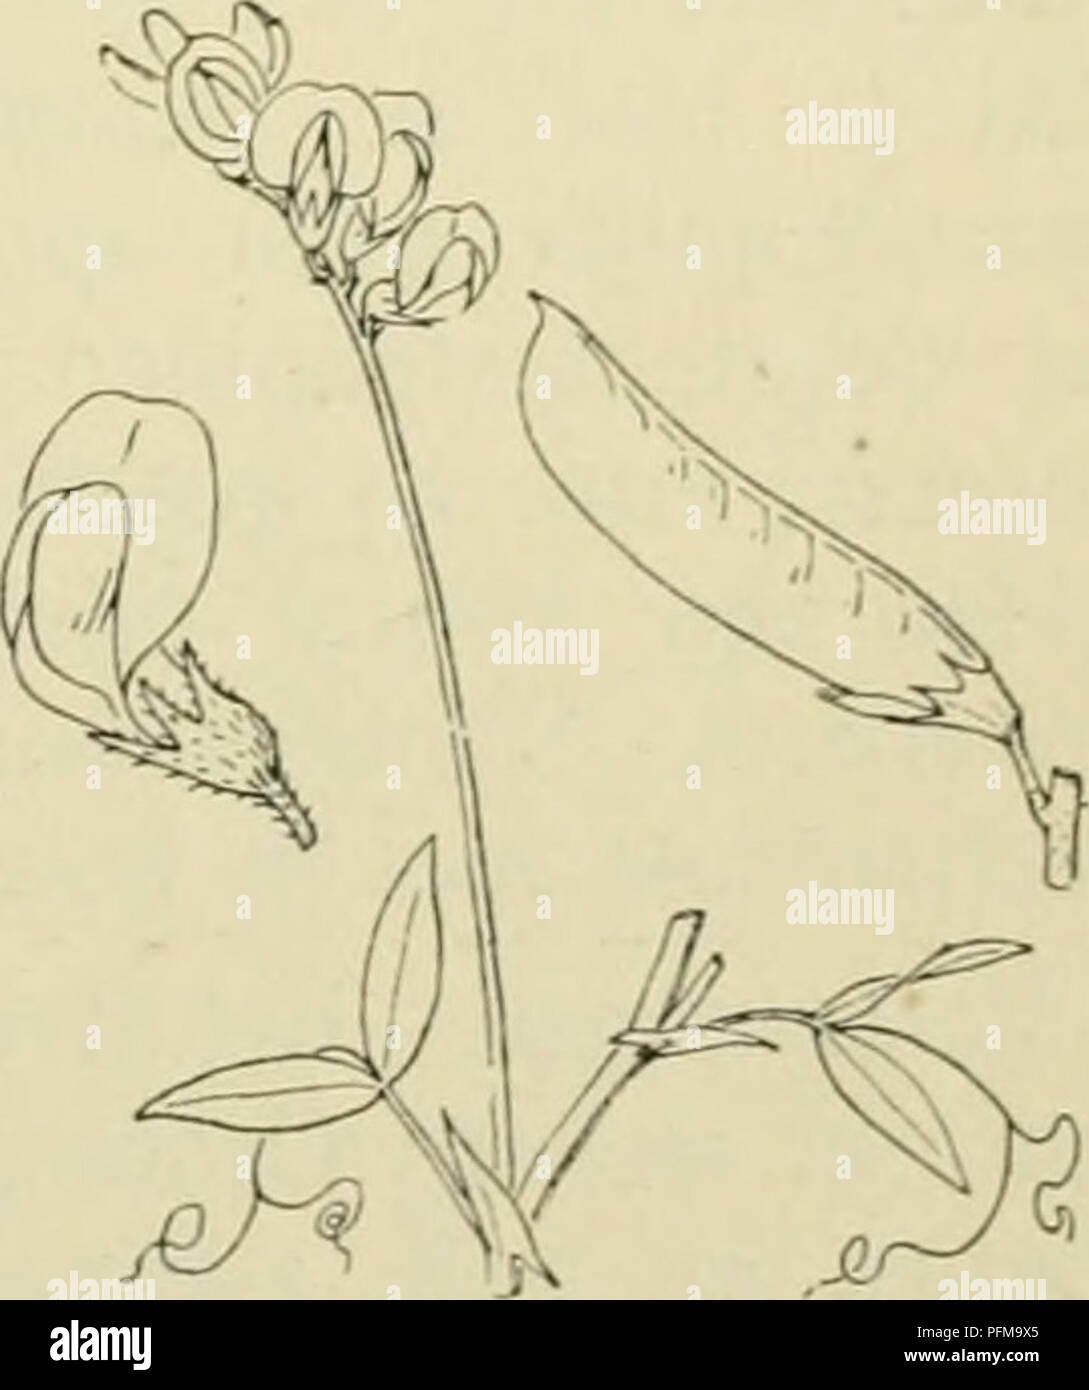 . De flora van Nederland. Plants. Latbyrus Nissólia Fig. 832. Zij heeft een kruipenden L. praténsis-) L. Veldlathyrus (fig. 833). Deze plant is zacht behaard of bijna onbehaard, wortelstok, waaruit iets samengedrukte, vierkante, klimmende, vertakte, ongevleugelde stengels komen. De bladen zijn 1-parig en hebben groote, half pijl-Iancetvormige steunbladen. De blaadjes zijn langwerpig-lancetvormig, toegespitst, zeer verschil- lend wat beharing betreft, tot grijsgroen toe. De bladen eindigen in vertakte ranken. De bloemen zijn geel, vrij groot (12-16 mM) en staan in 4-10-bloemige, losse trossen,  Stock Photo